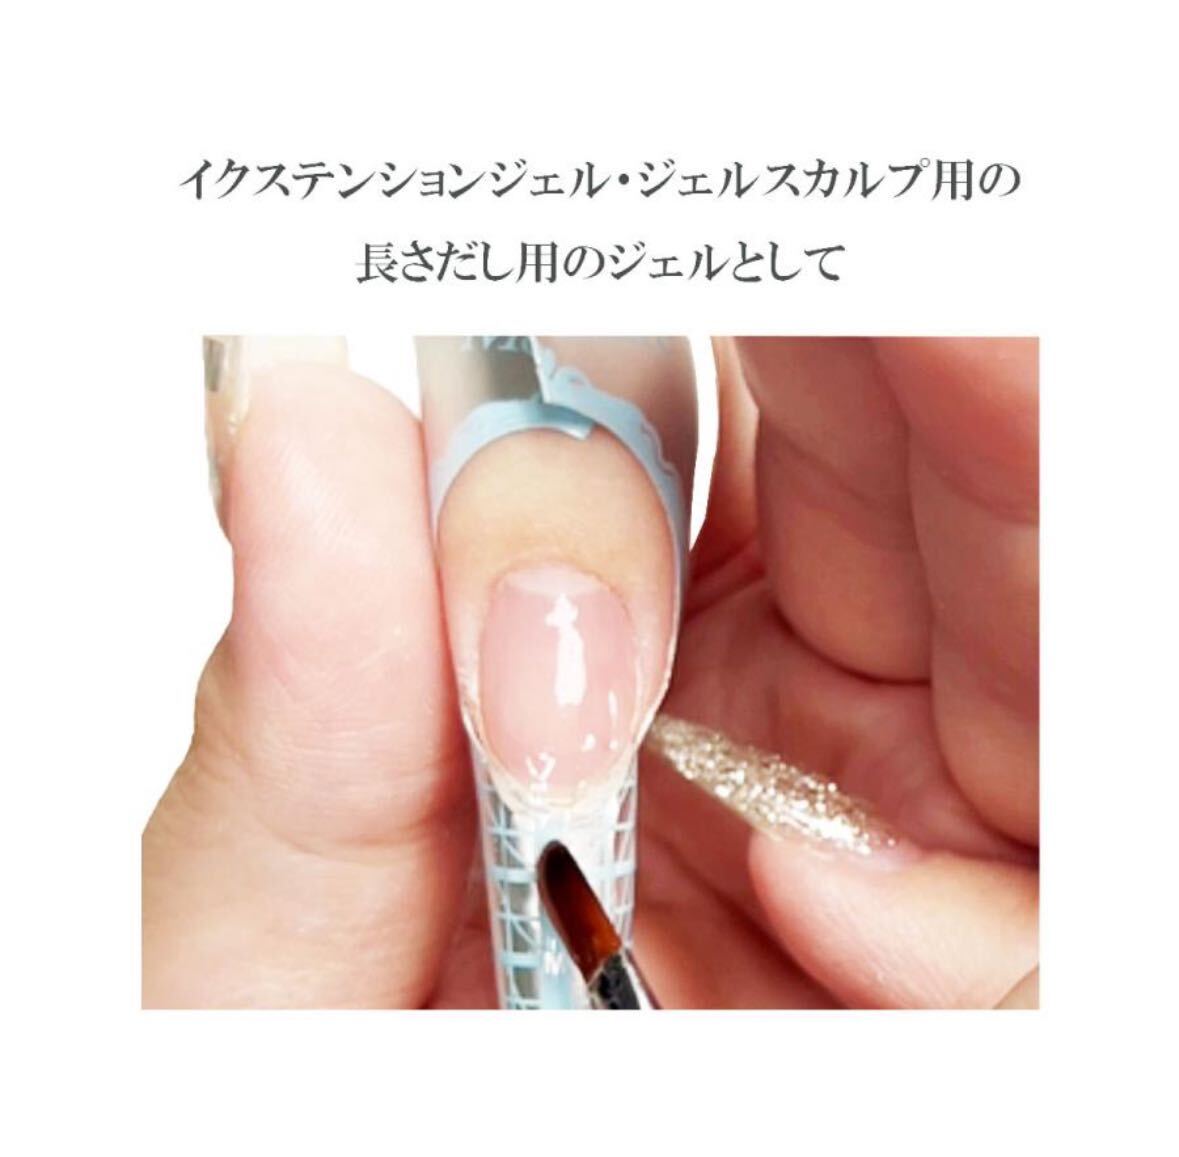 LinoGellino гель твердый верхнее покрытие жесткий верх гель местного производства гель ногти 2 шт. комплект верх 15g твердый блеск глянец прозрачный чувство UV LED соответствует 